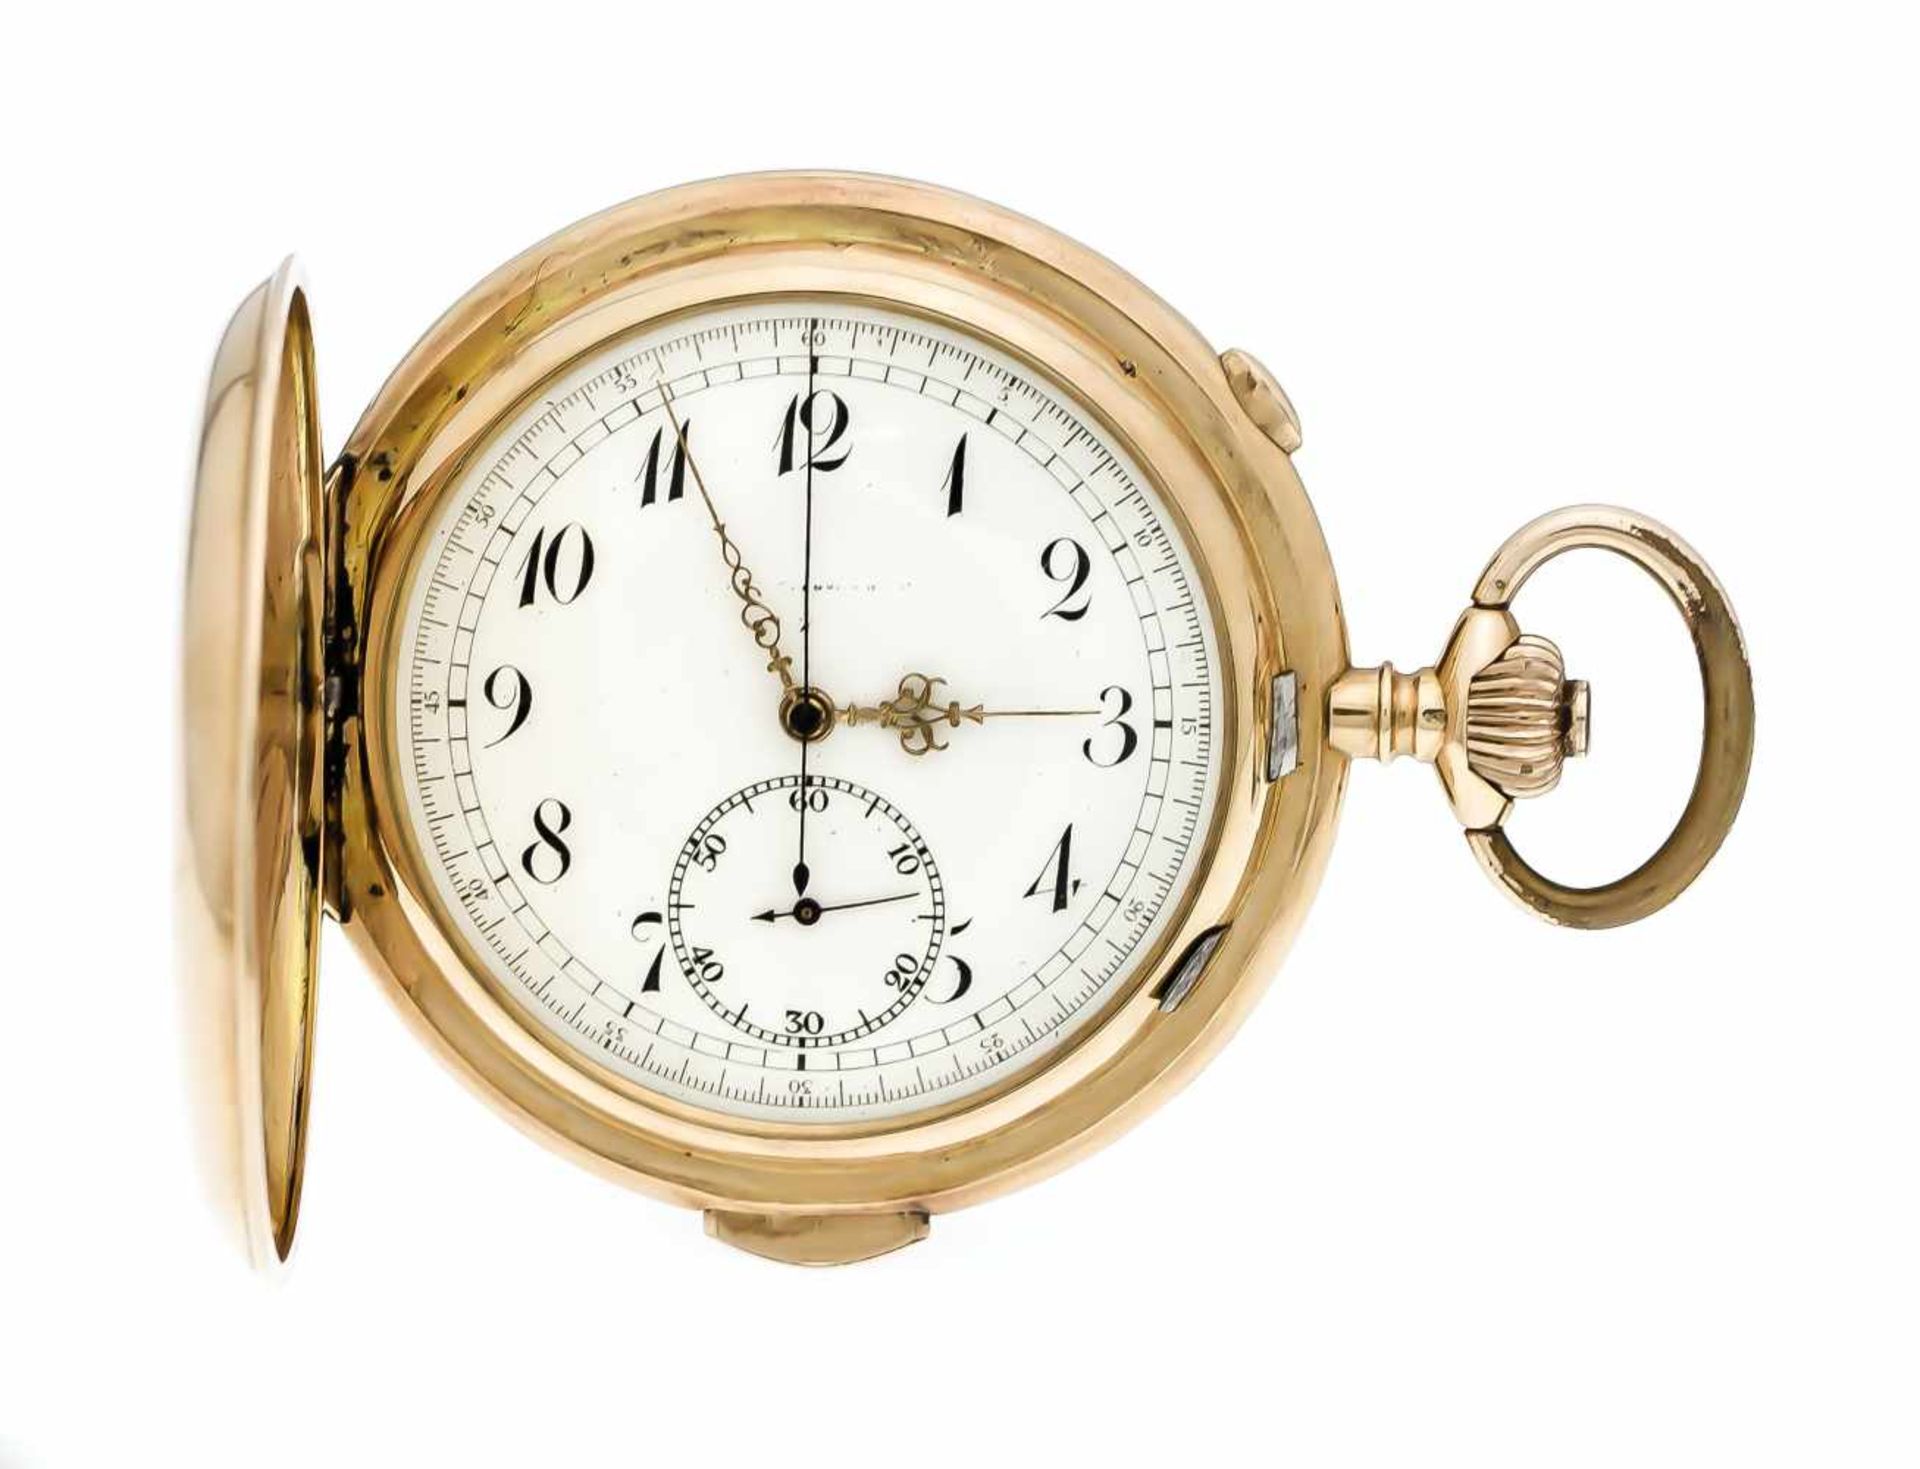 Herrentaschenuhr, GG 585 3 Deckel, 1/4 Std. Repetition und Chronograf, Uhr läuft tadelos,Scharnier